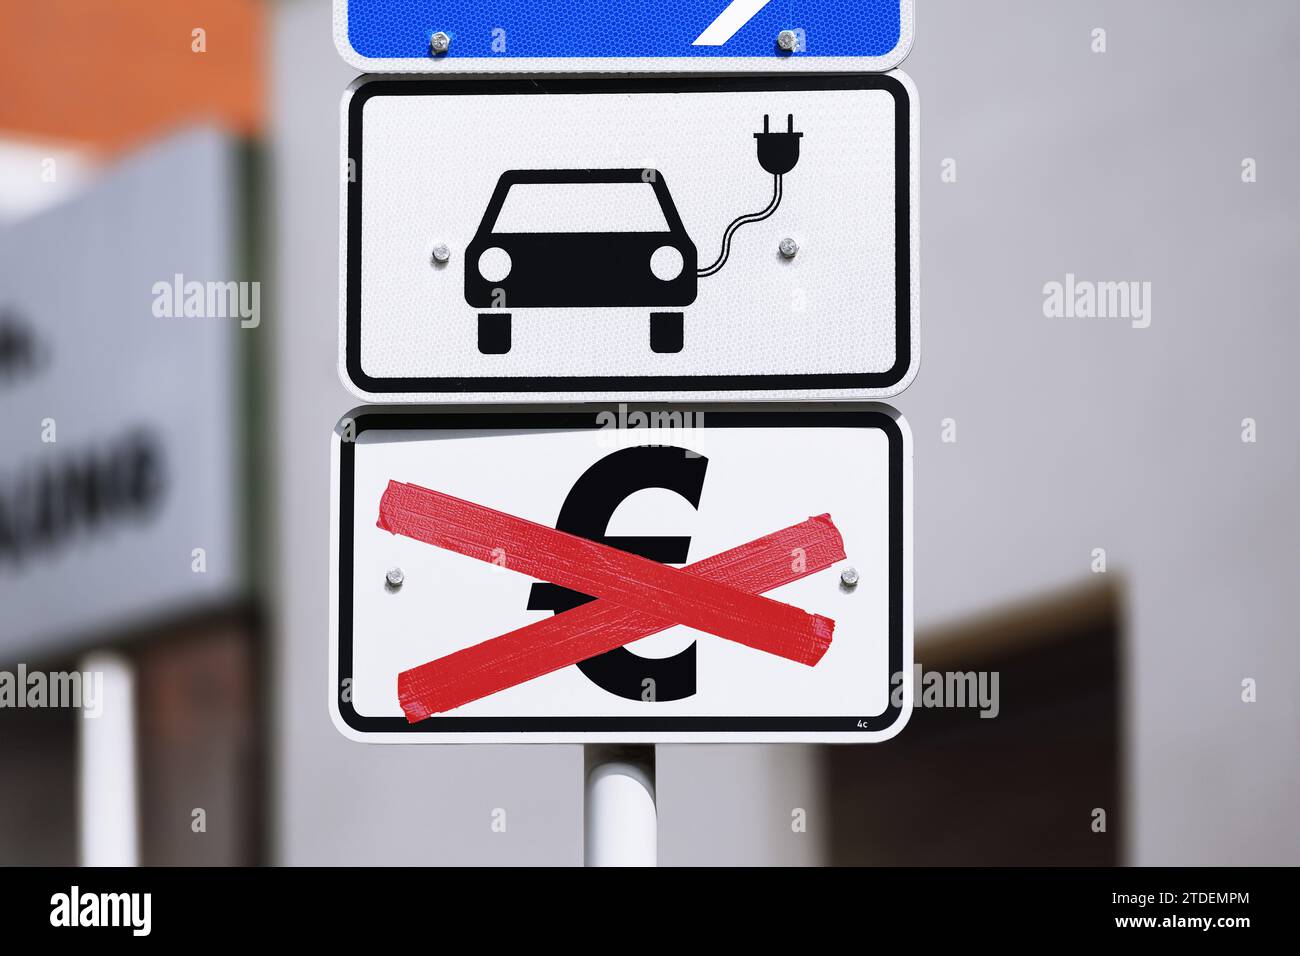 Signe de pictogramme de voiture électronique avec symbole Euro barré, fin de Eco-Premium pour les voitures électroniques, photomontage Banque D'Images